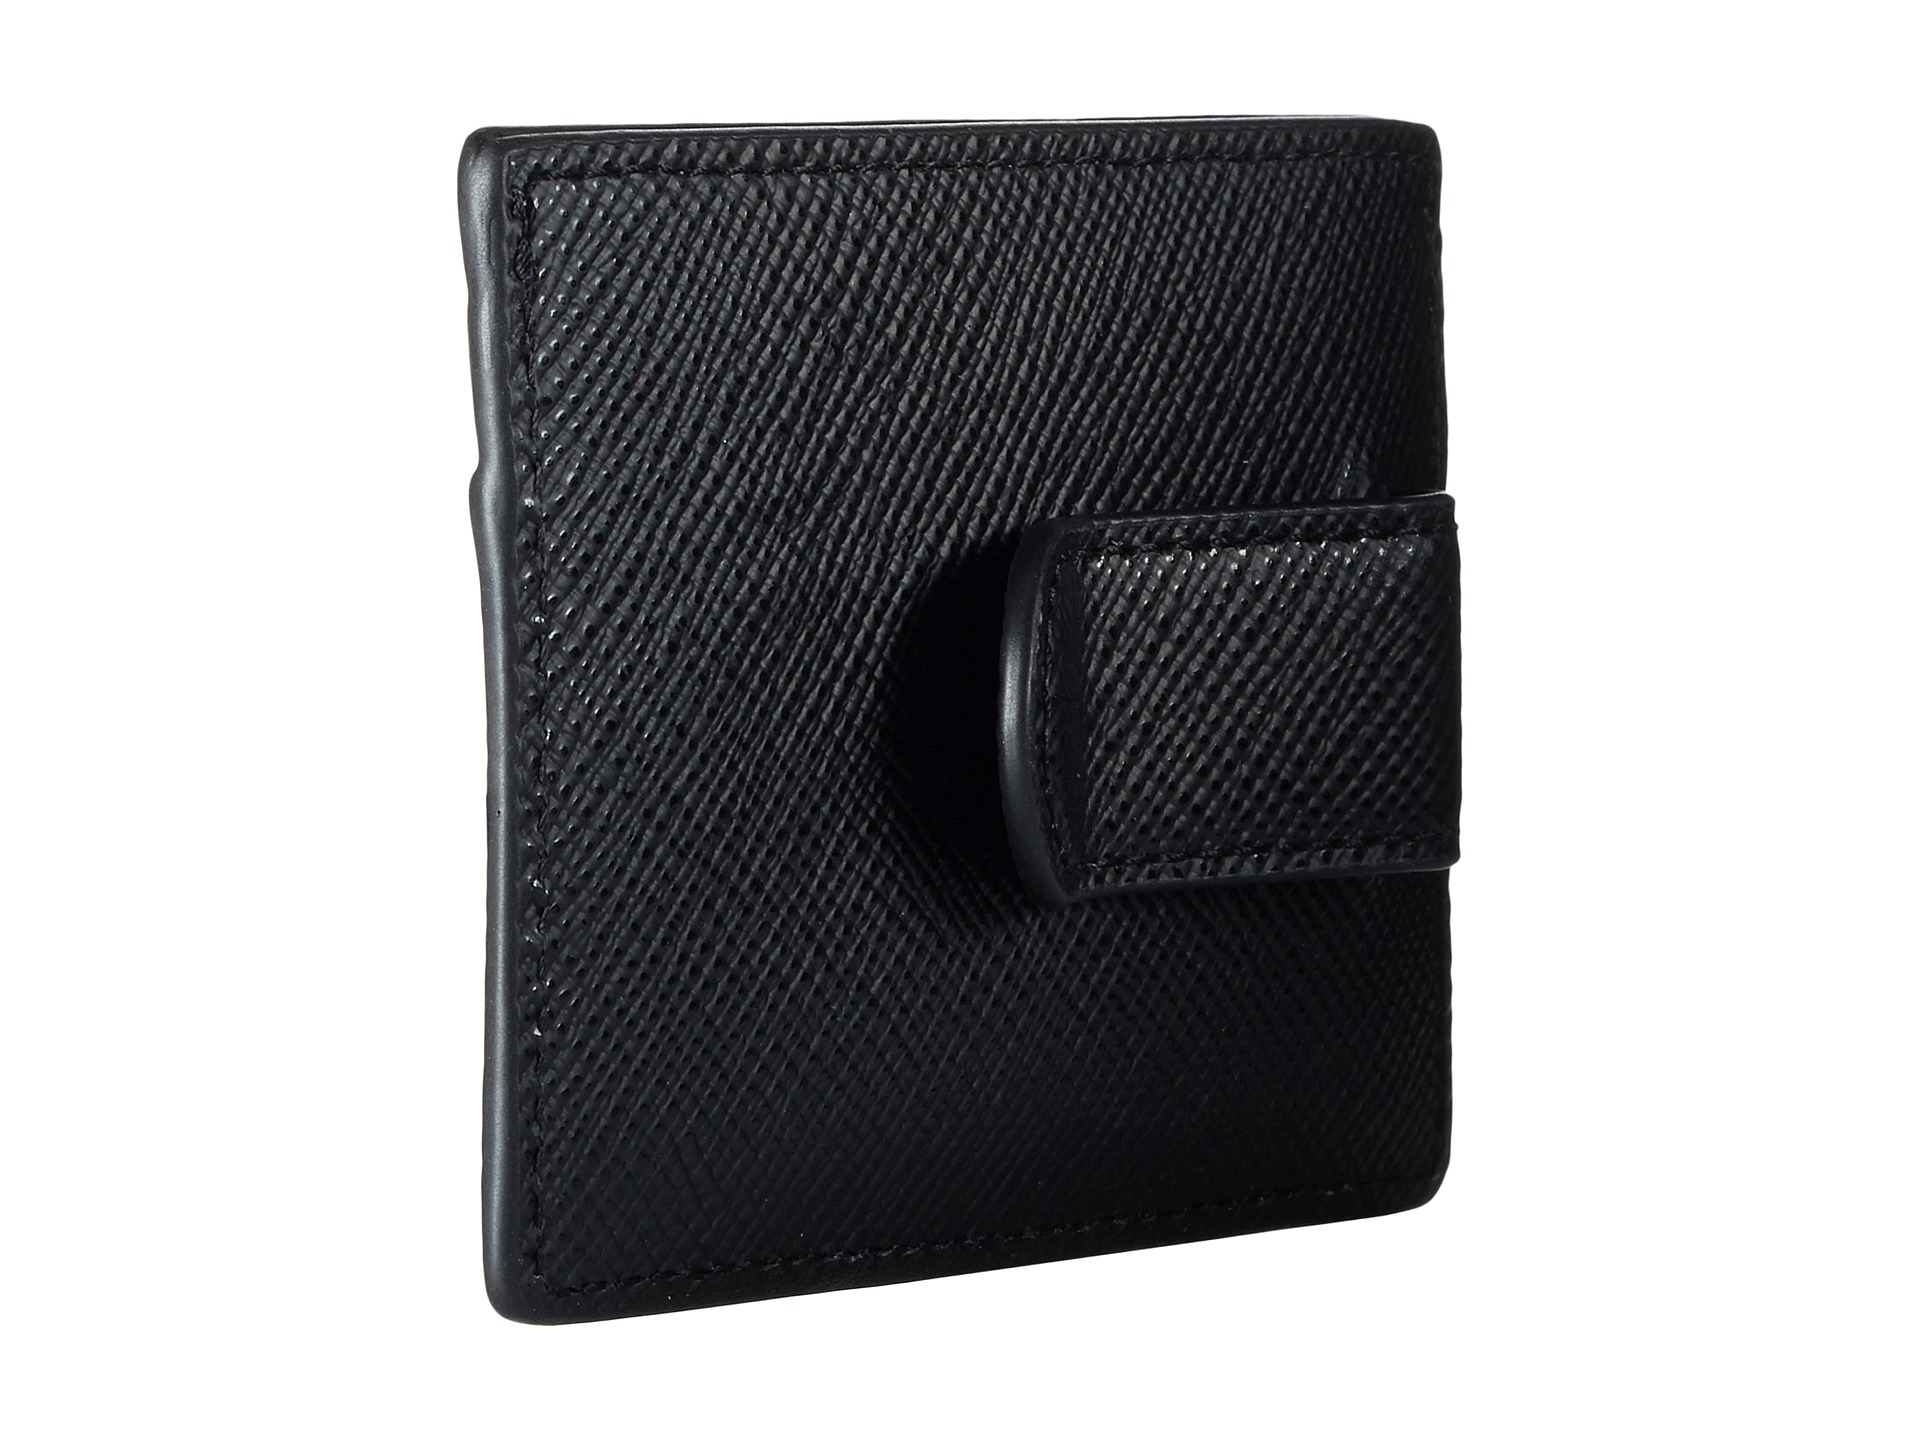 Lyst - Michael Kors Harrison Cross Grain Leather Card Case W/ Money Clip in Black for Men